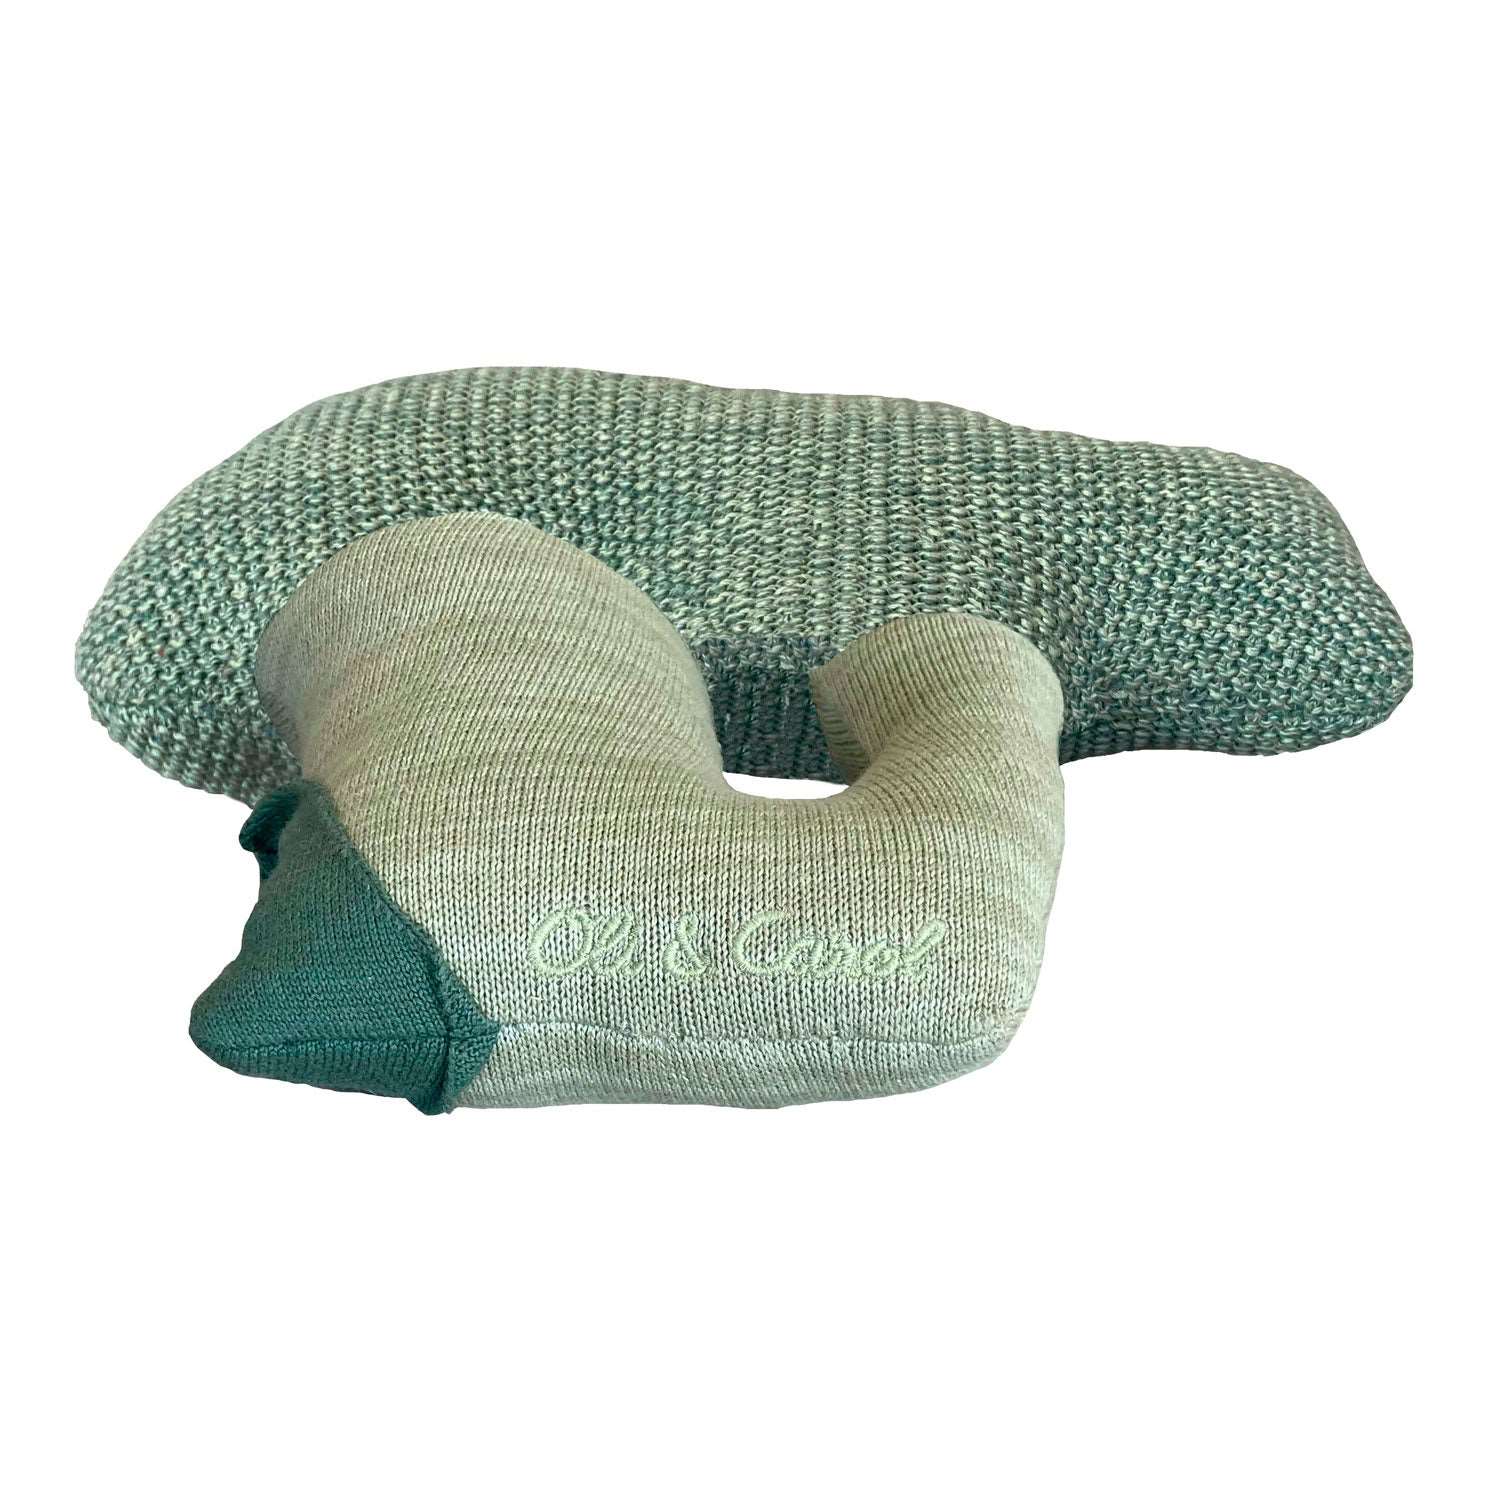 Knitted cushion Brucy the Broccoli - Oli&Carol